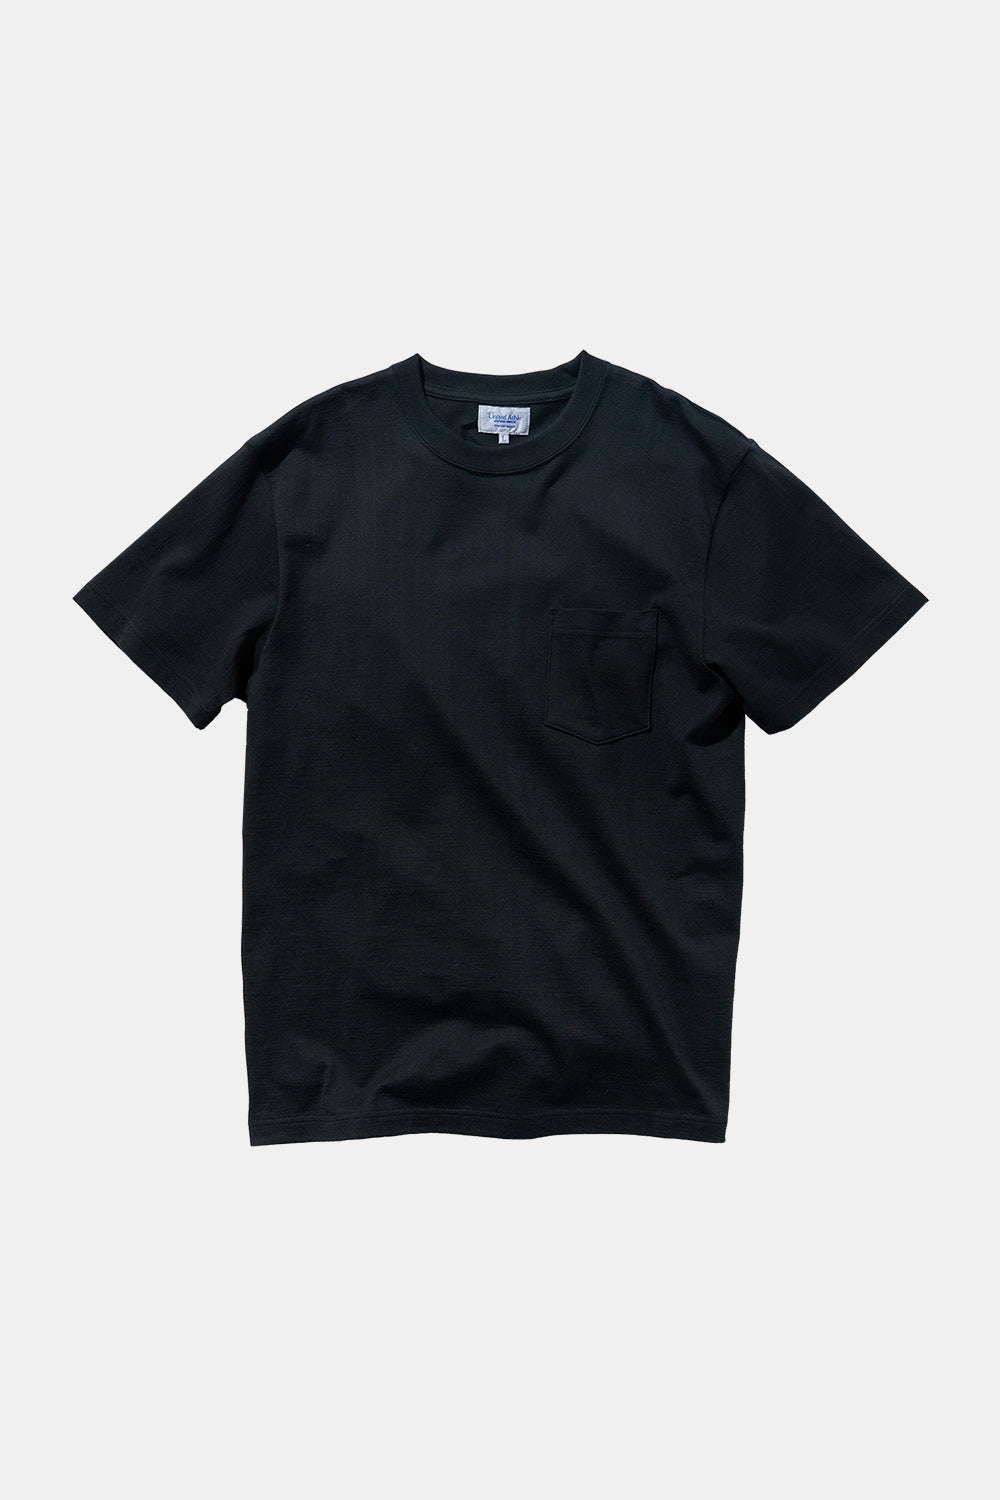 United Athle Japan Made Standard Fit Pocket T-shirt (Black)